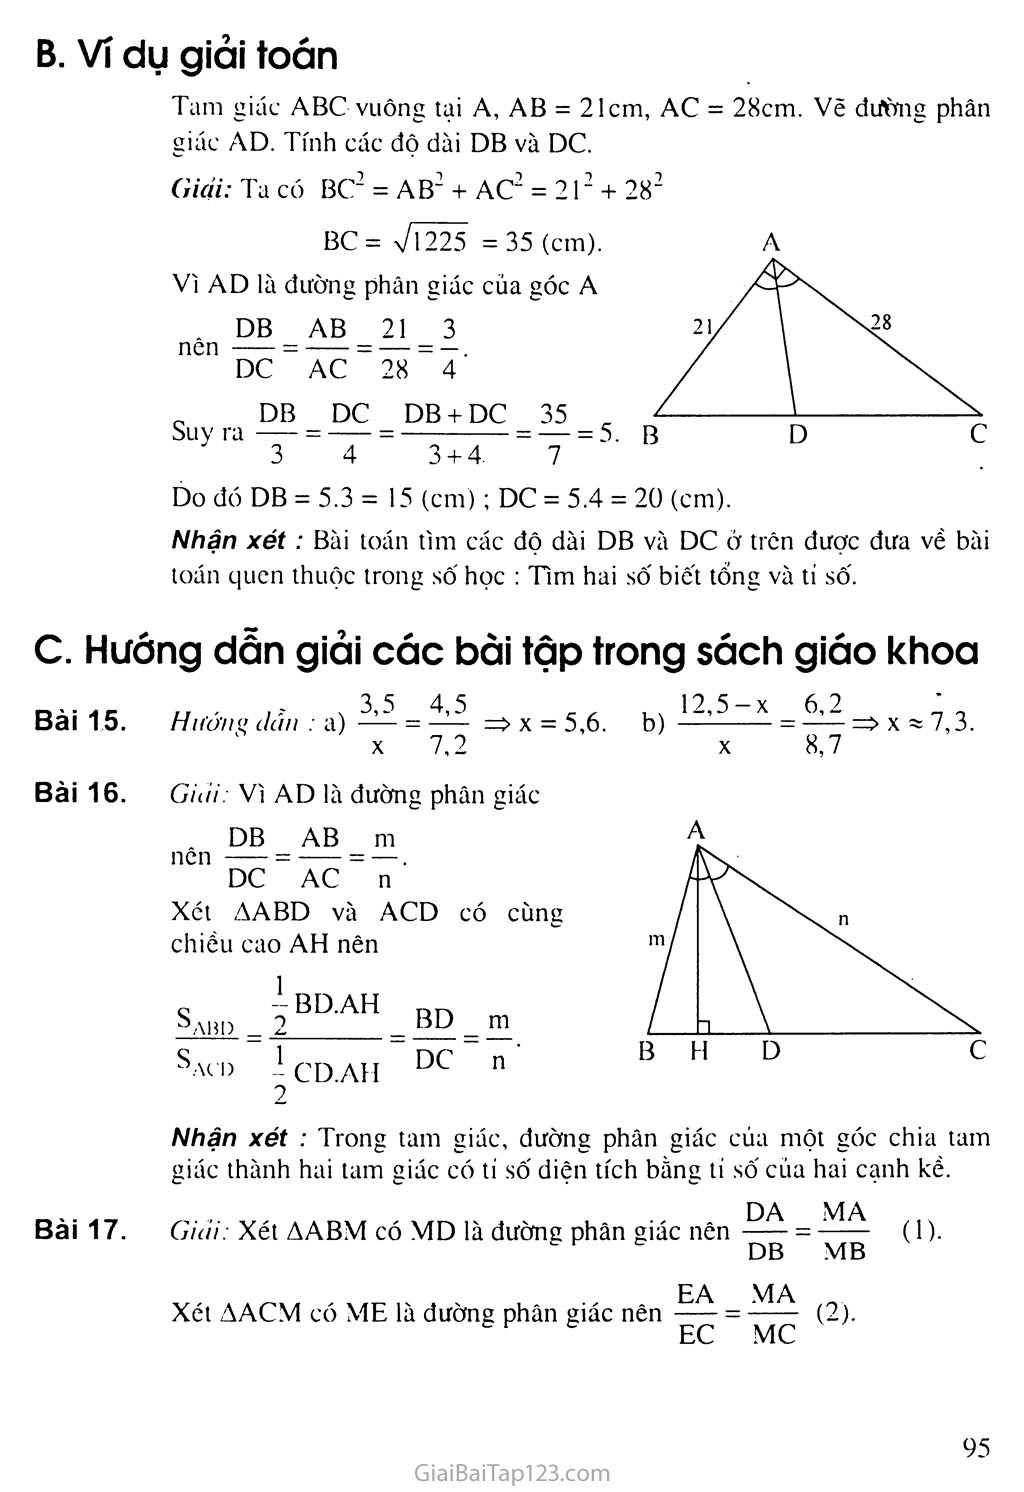 Bài 3. Tính chất đường phân giác của tam giác trang 2